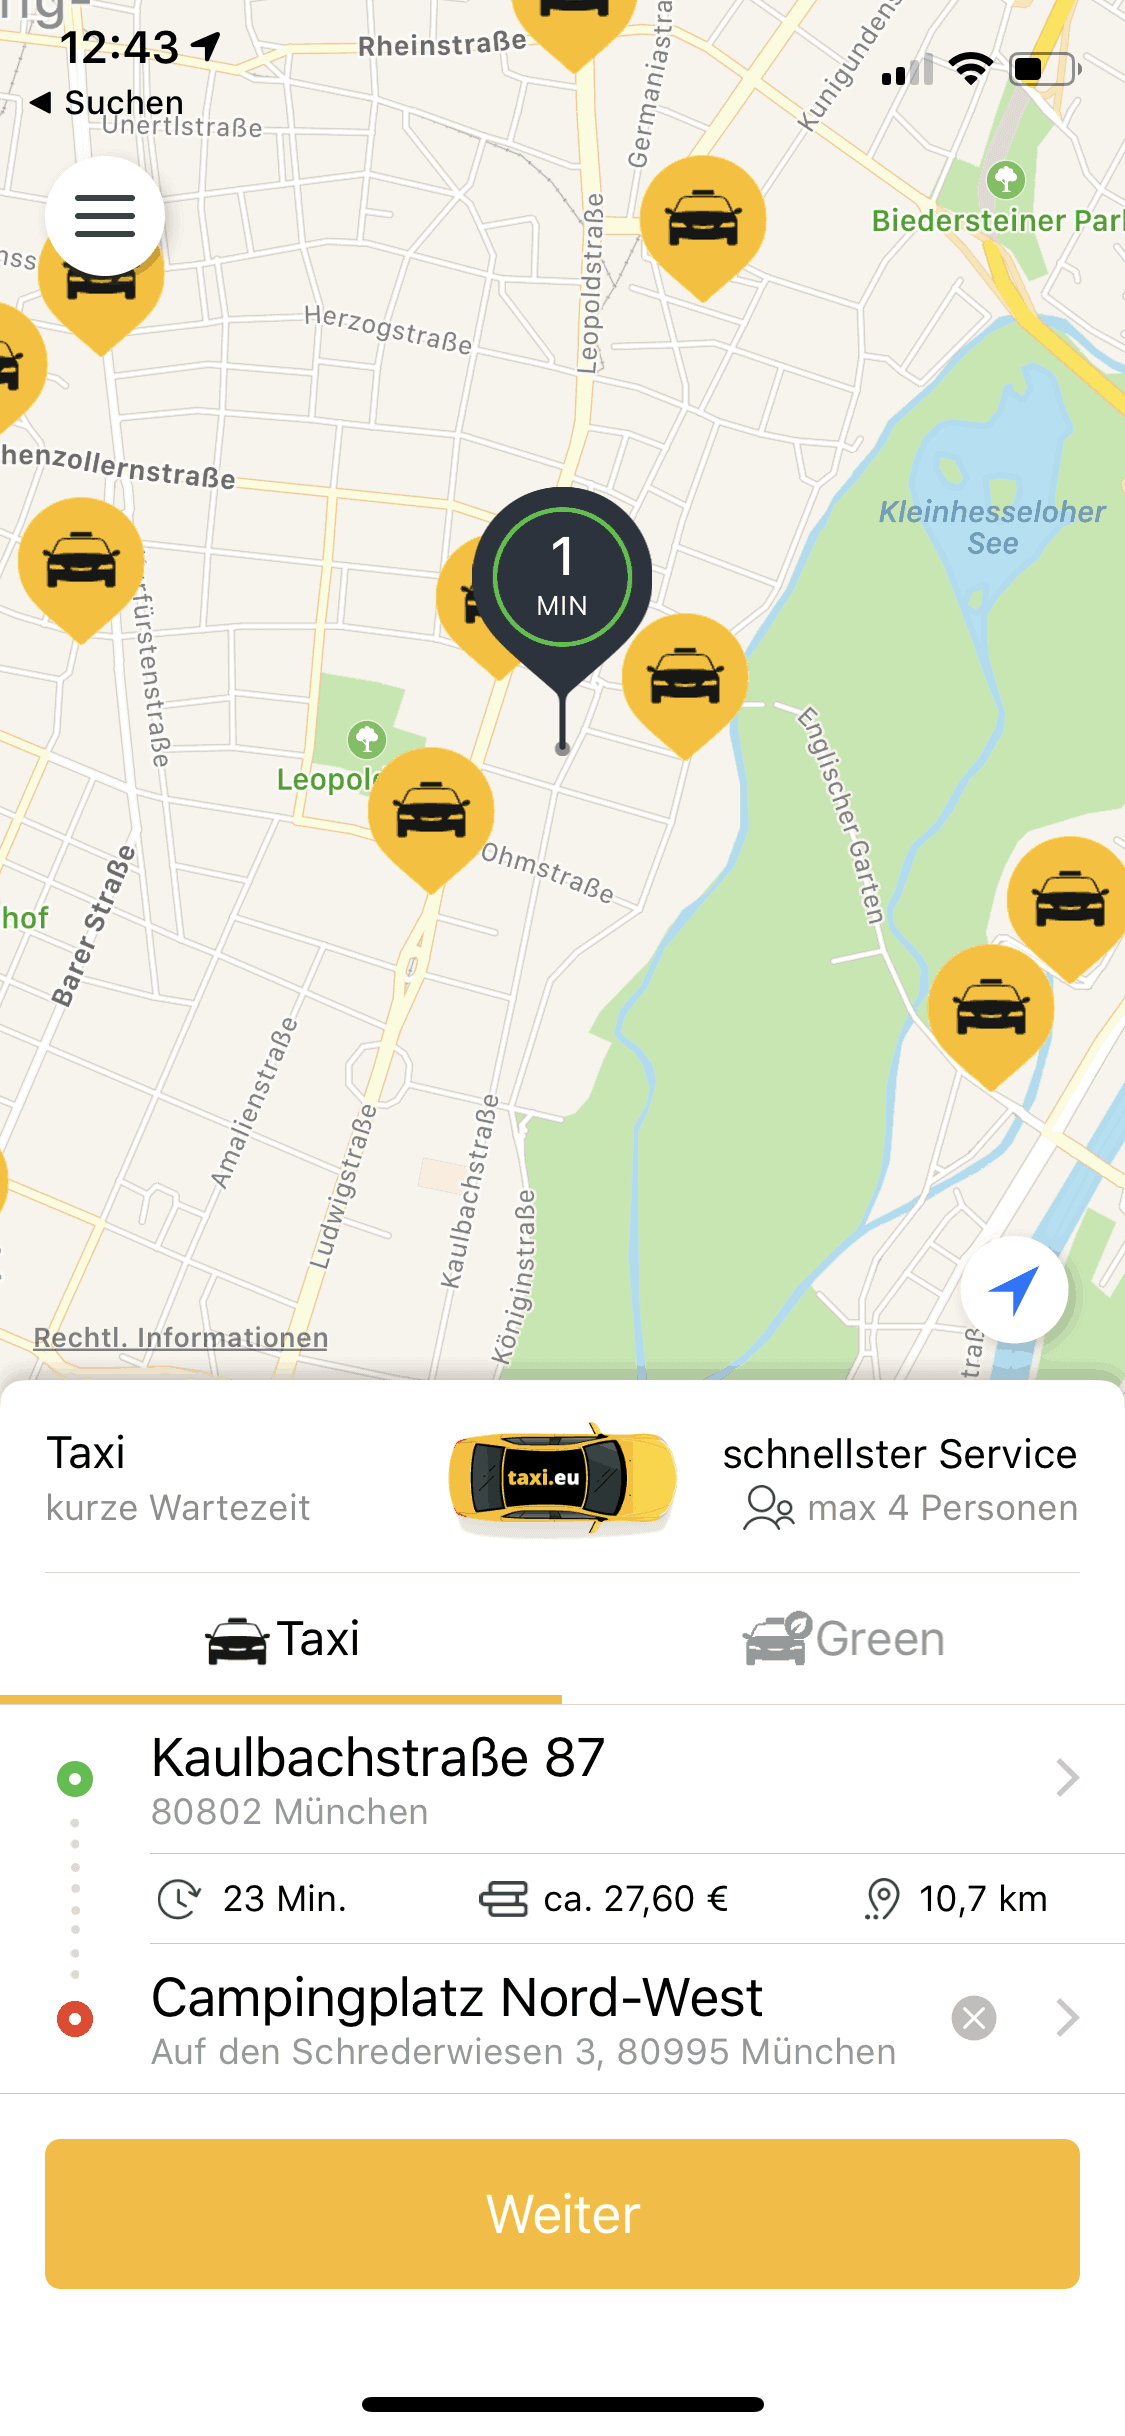 München_Taxi_Taxi_eu_App